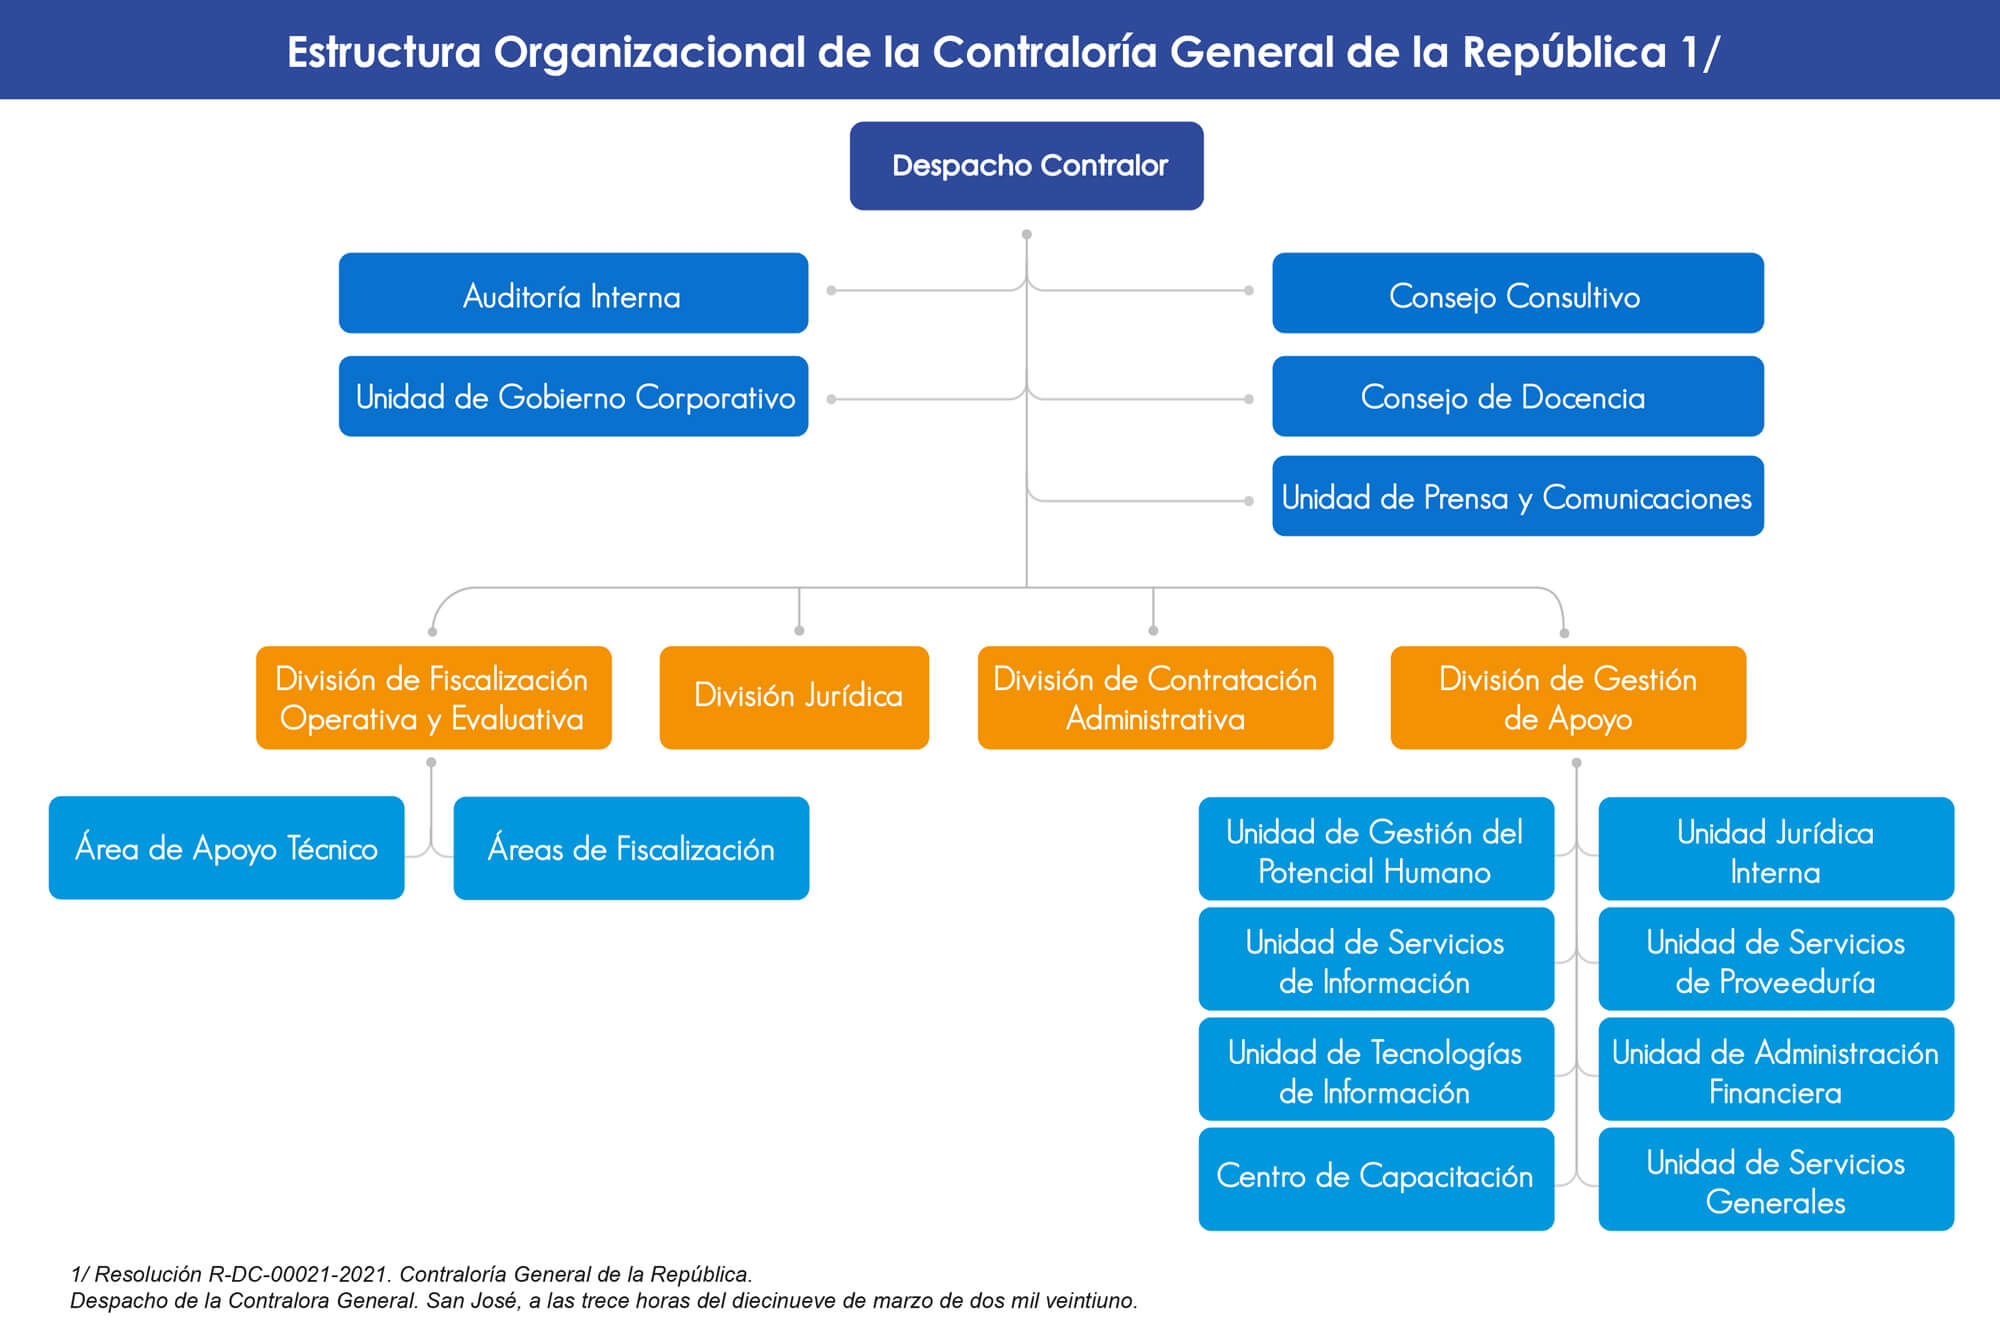 Imagen con el detalle de la Estructura organizacional de la Contraloría General de la República